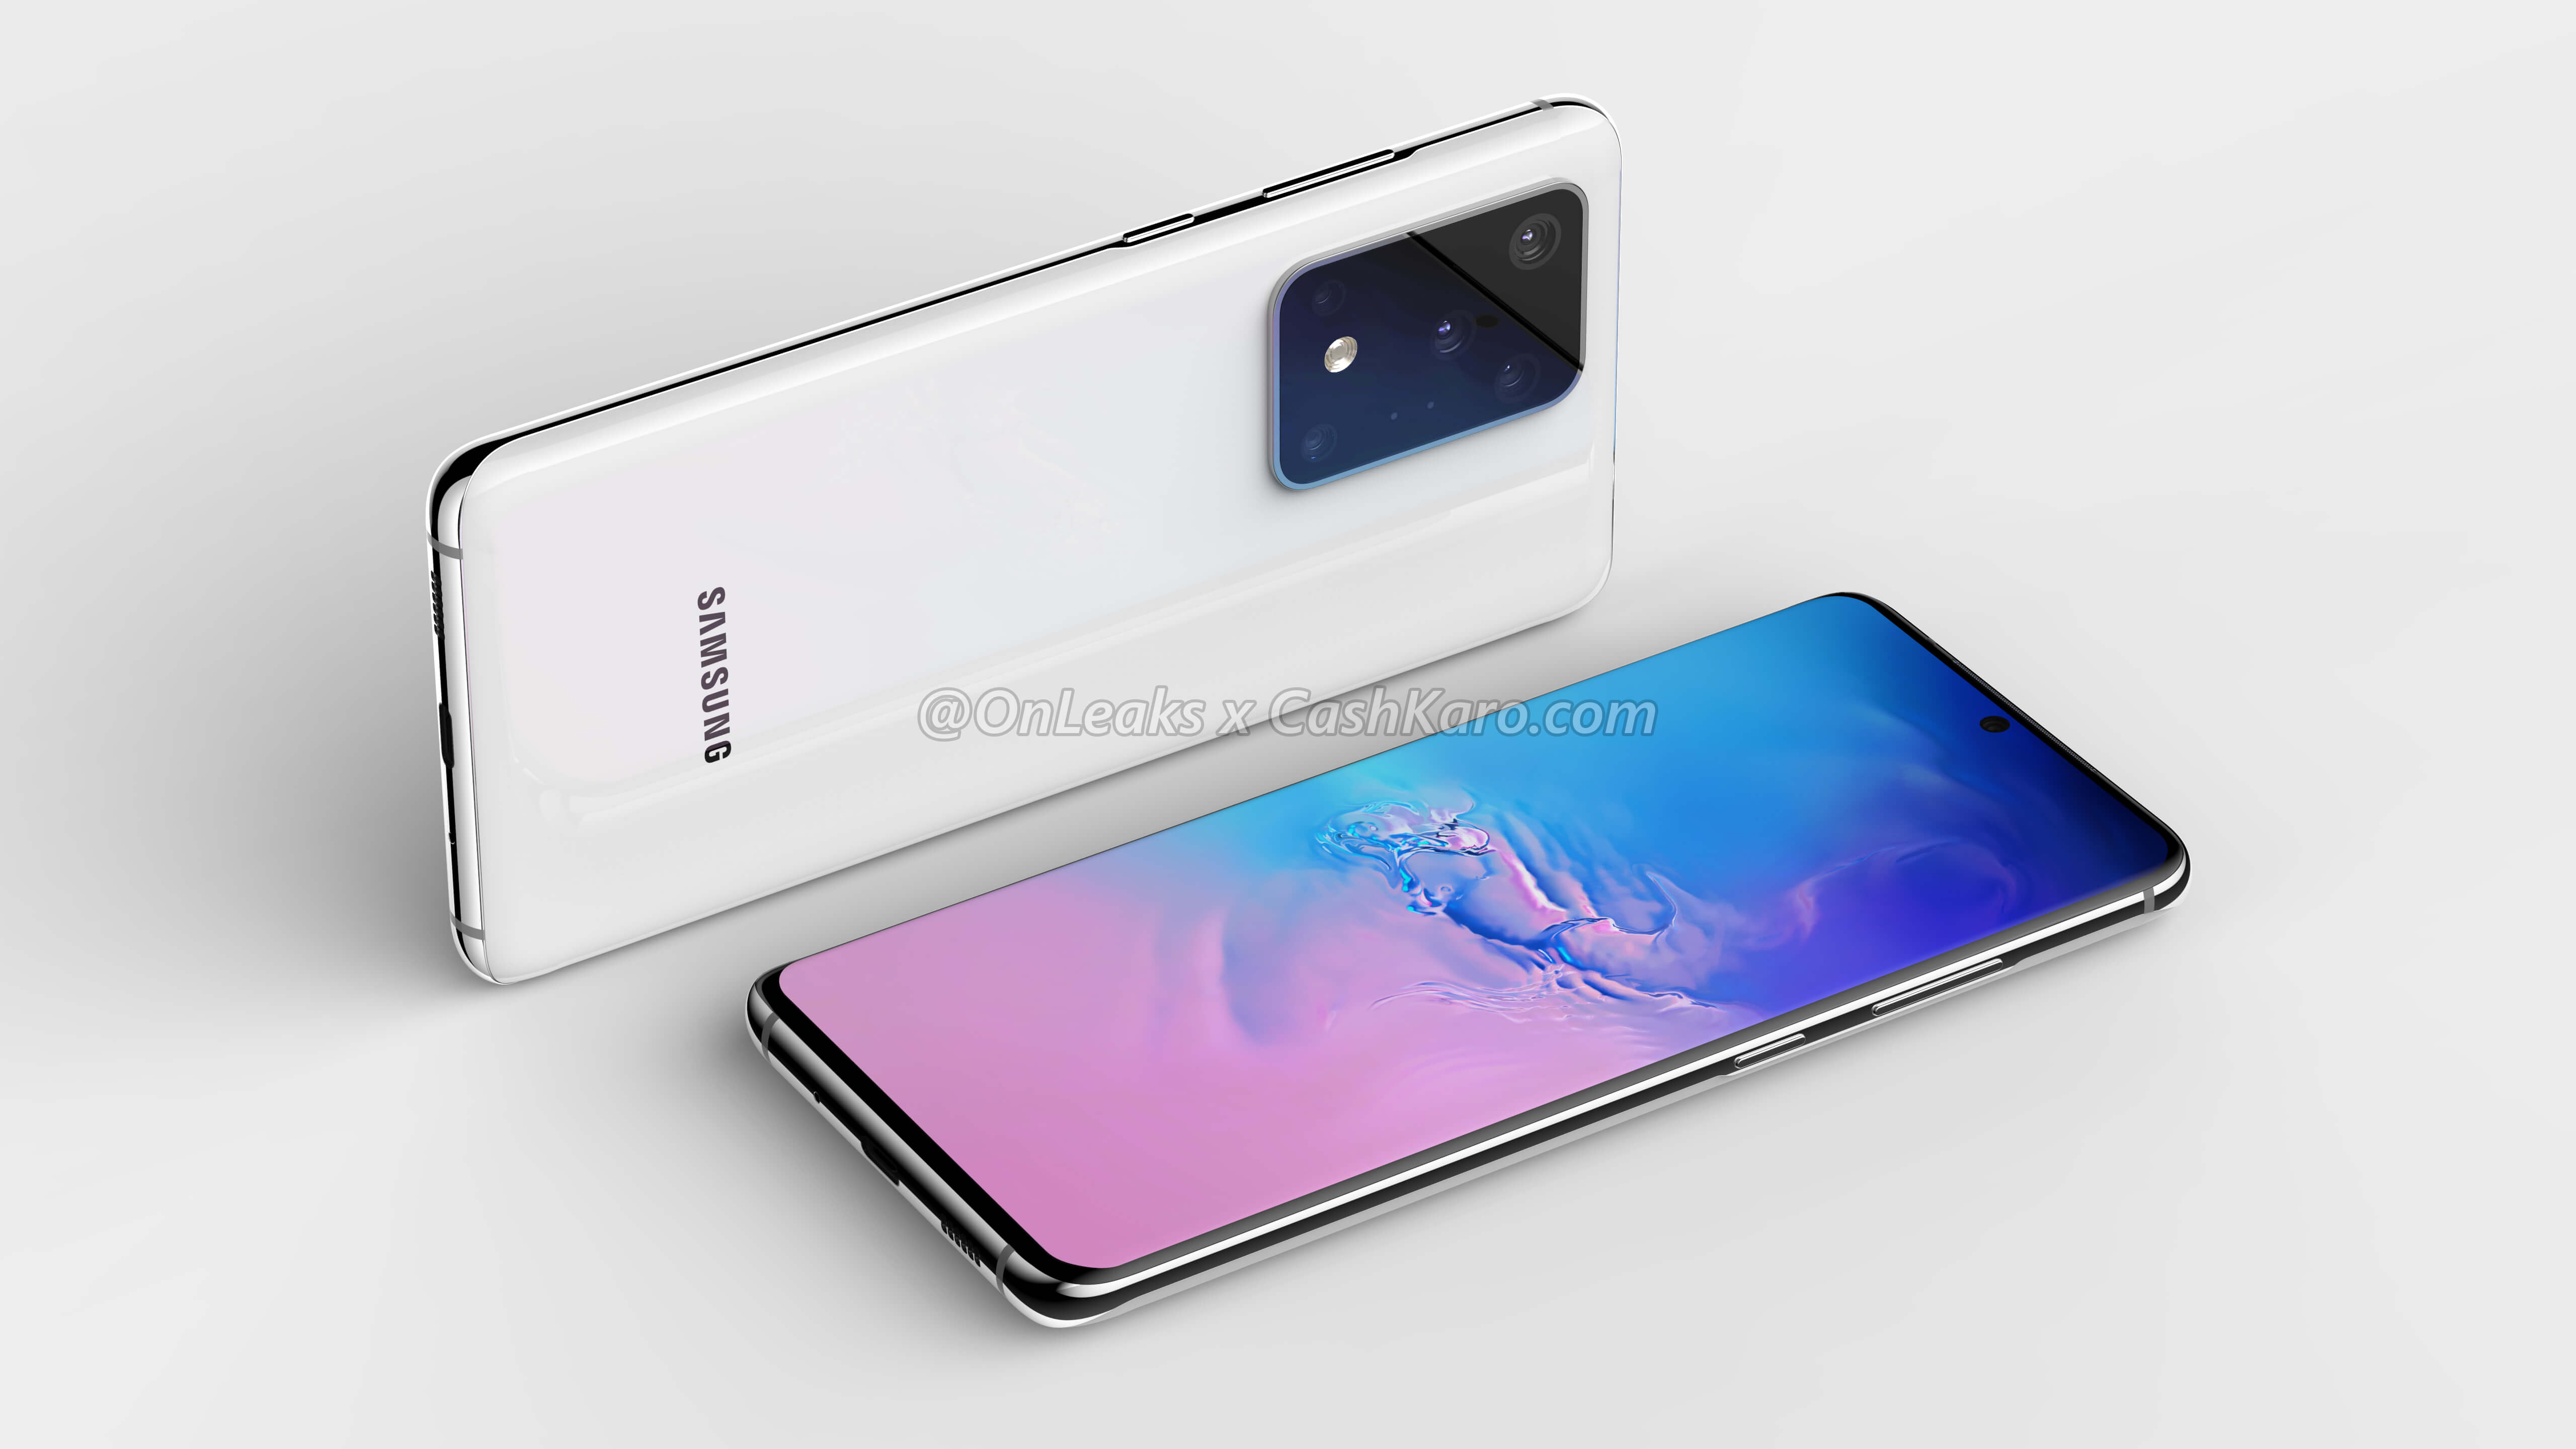 Samsung Galaxy S11 Plus rendery Onleaks specyfikacja techniczna aparat plotki przecieki wycieki kiedy premiera design